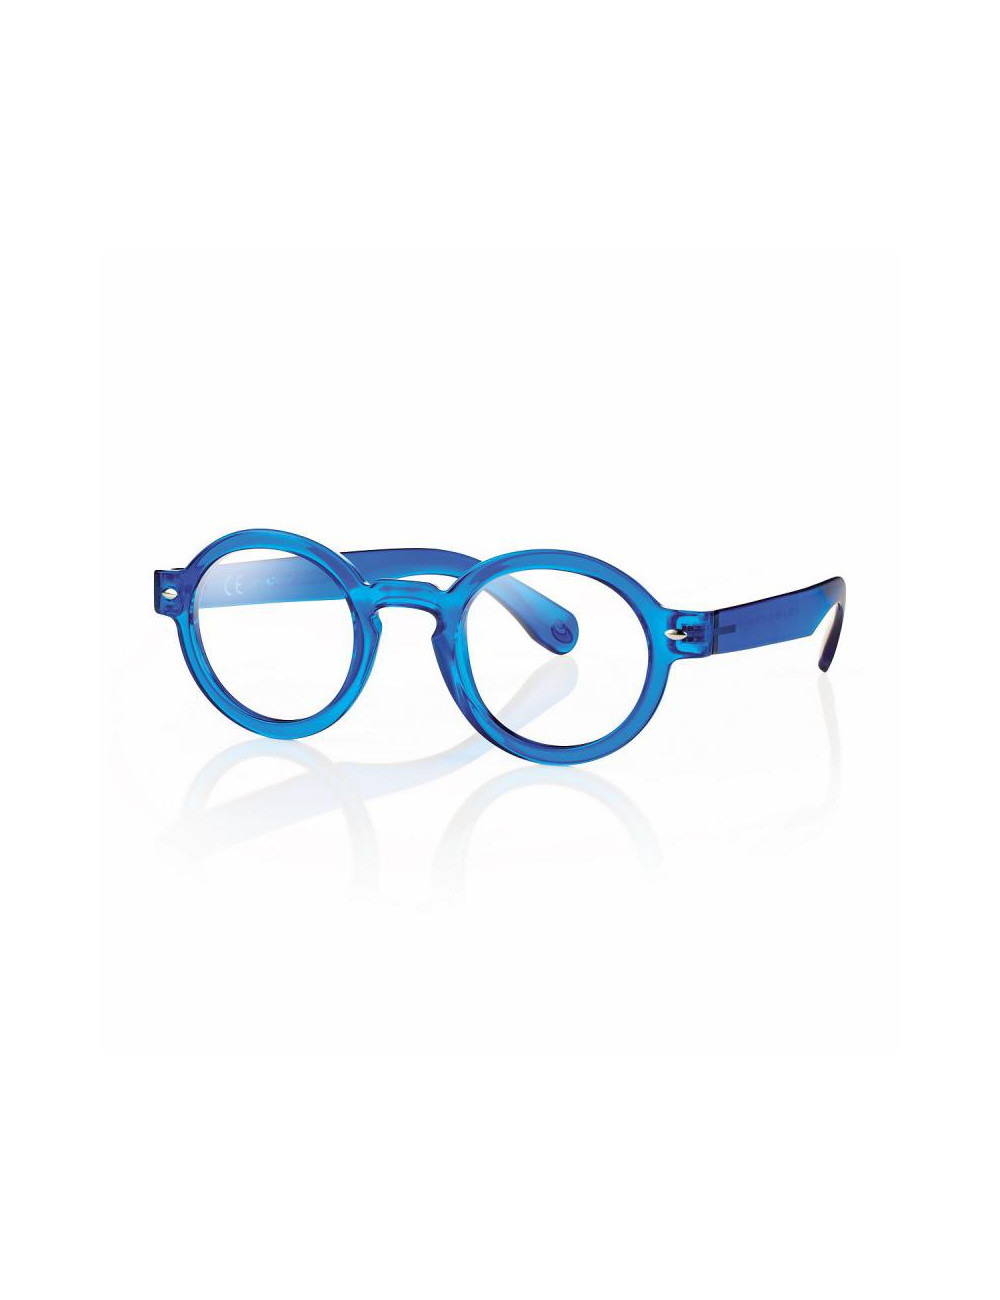 Centrostyle Smart R0359 occhiale da lettura